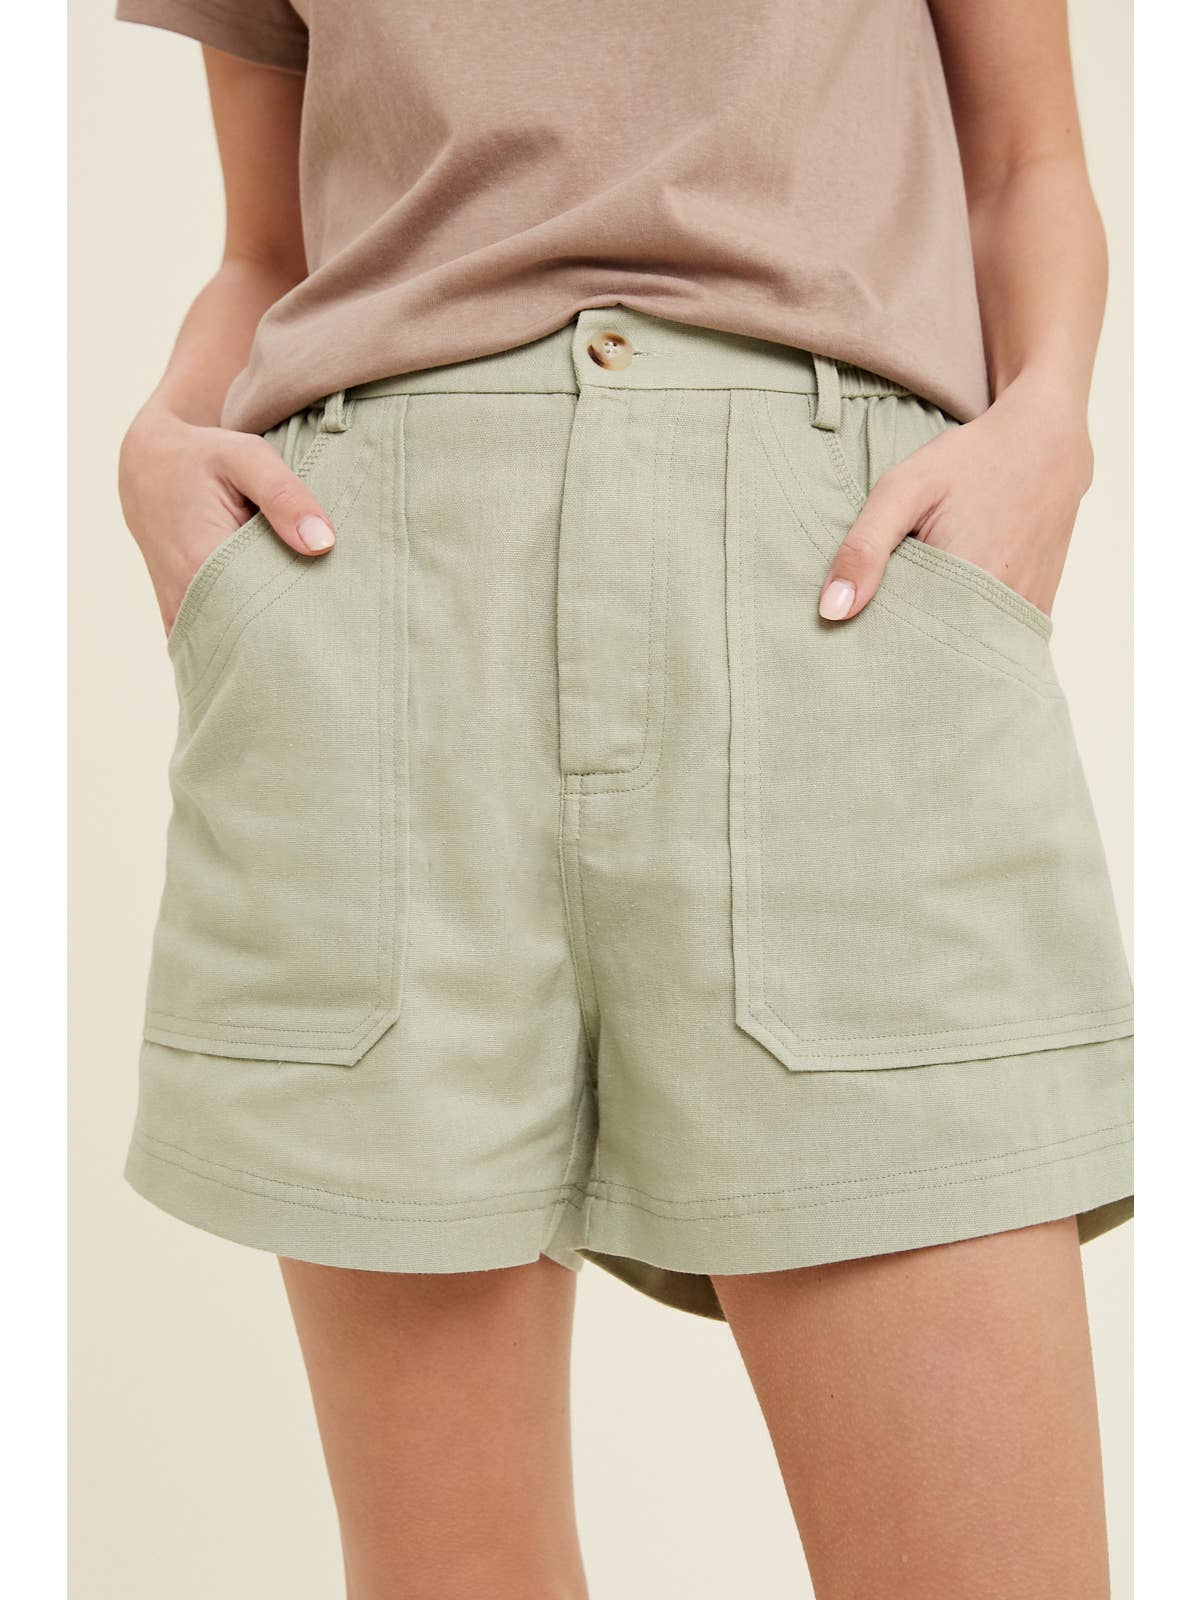 Linen Blend Cargo Shorts